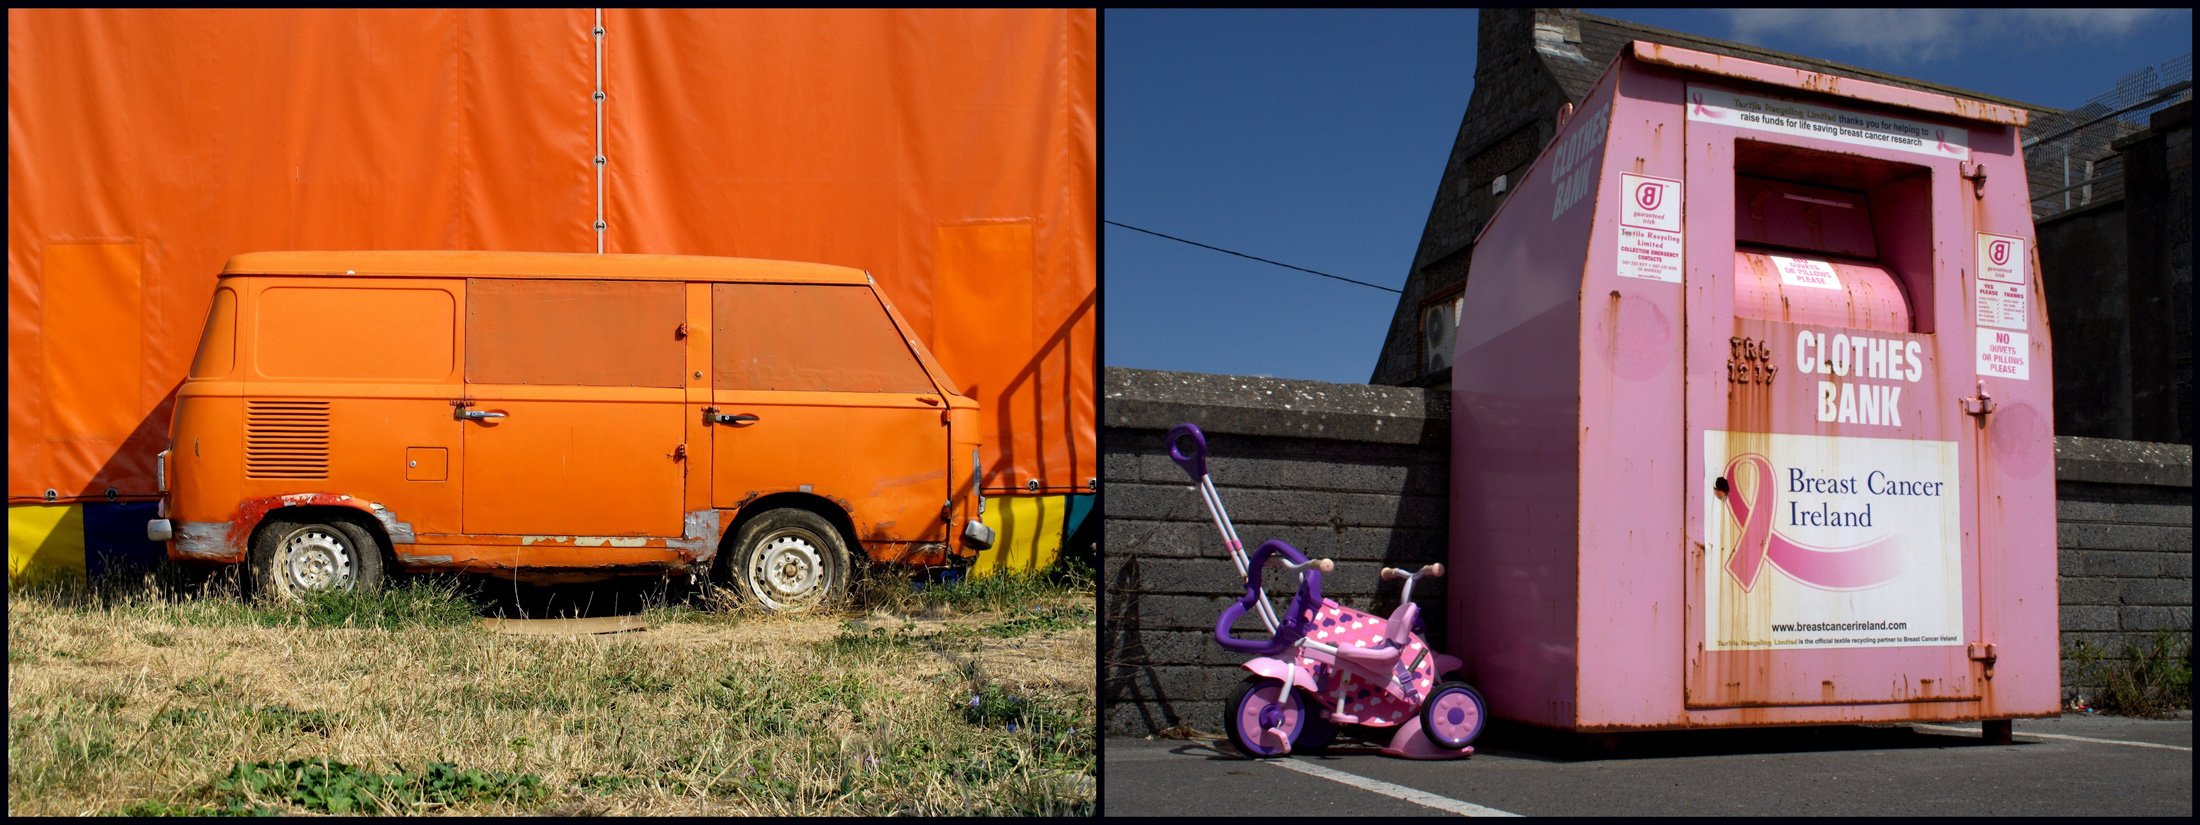 ein knallorangener VW-Bus vor einer kanllorangenen Wand und ein rosanes Dreirad neben einem rosanen Kleider-Container